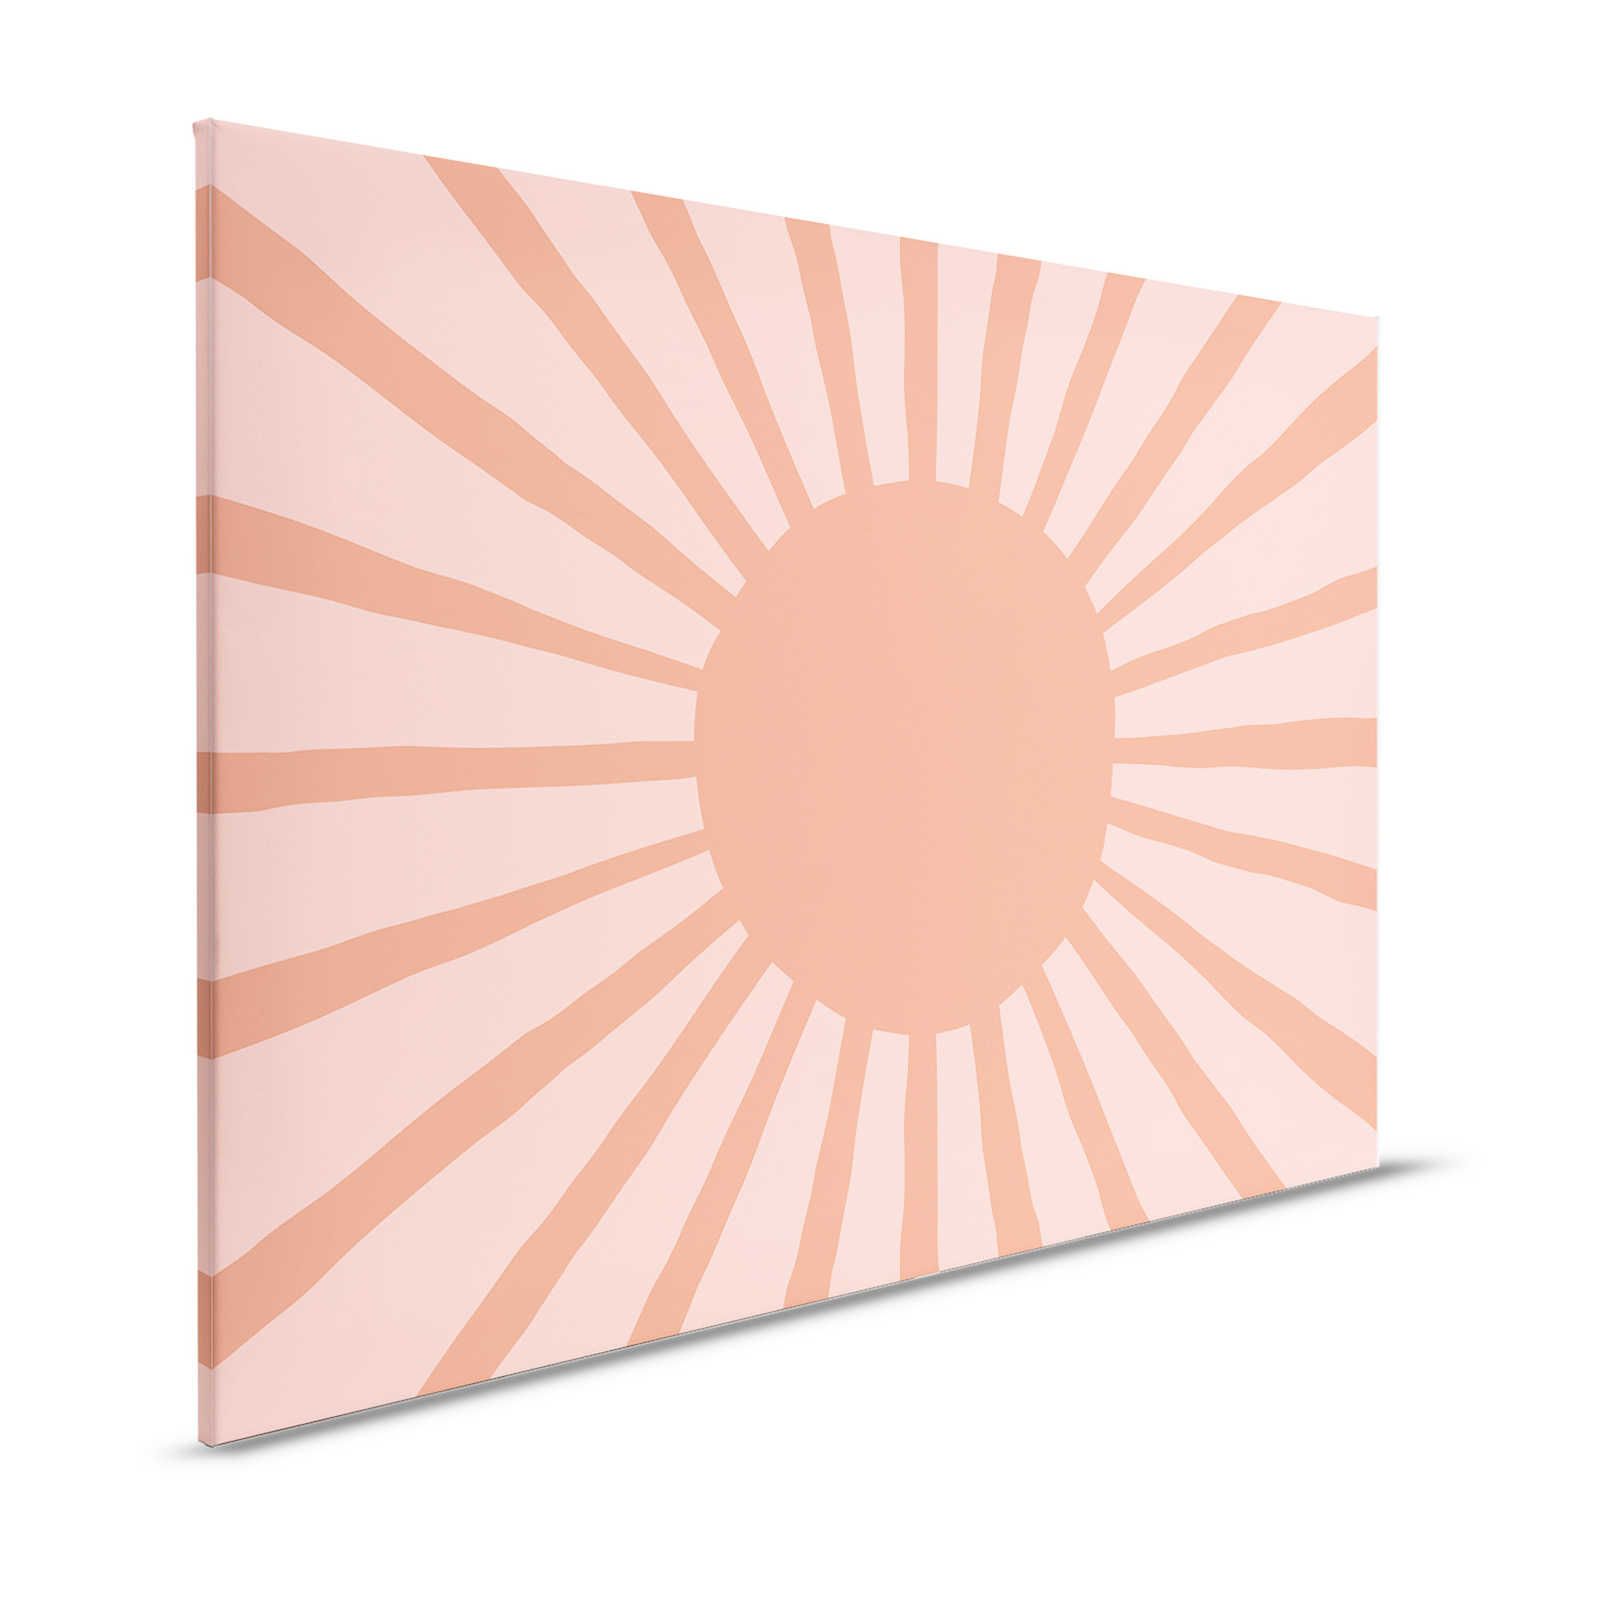 Leinwand abstrakte Sonne im gemalten Stil – 120 cm x 80 cm
